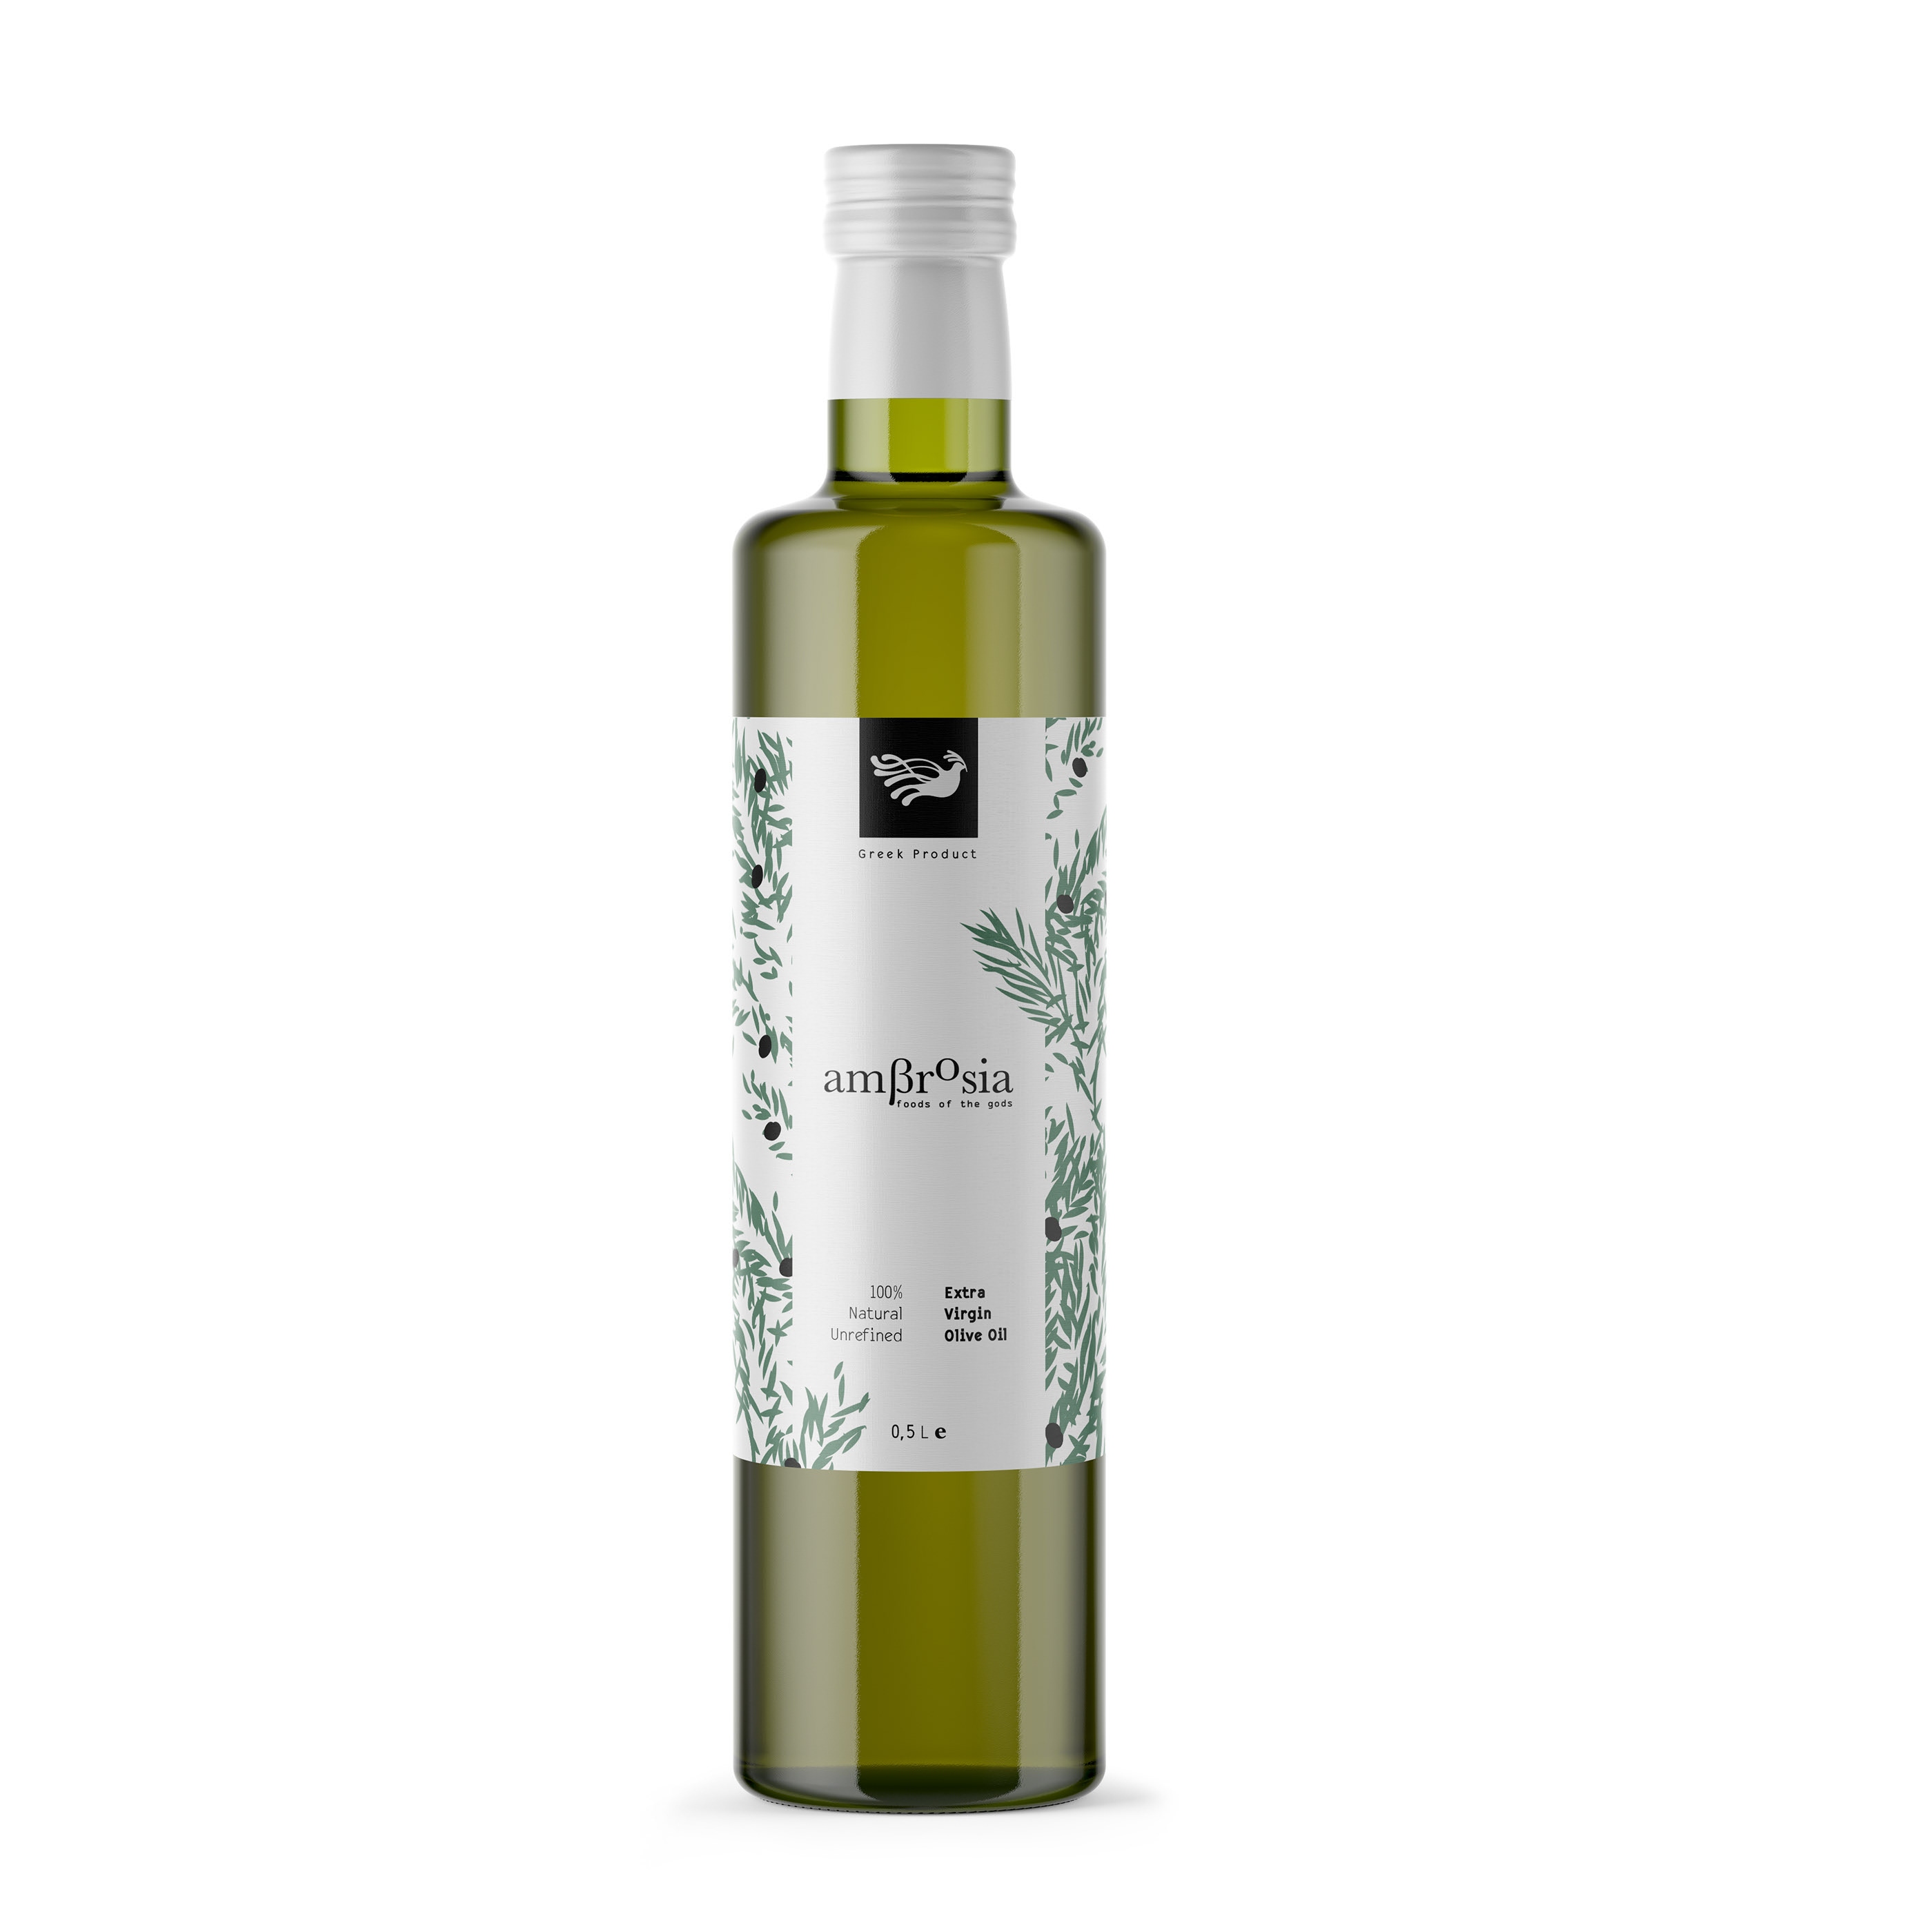 Оливковое масло 0.5. Natura Extra Virgin Olive Oil. Дозатор для оливкового масла. Оливковое масло Premium. Греческое оливковое масло.